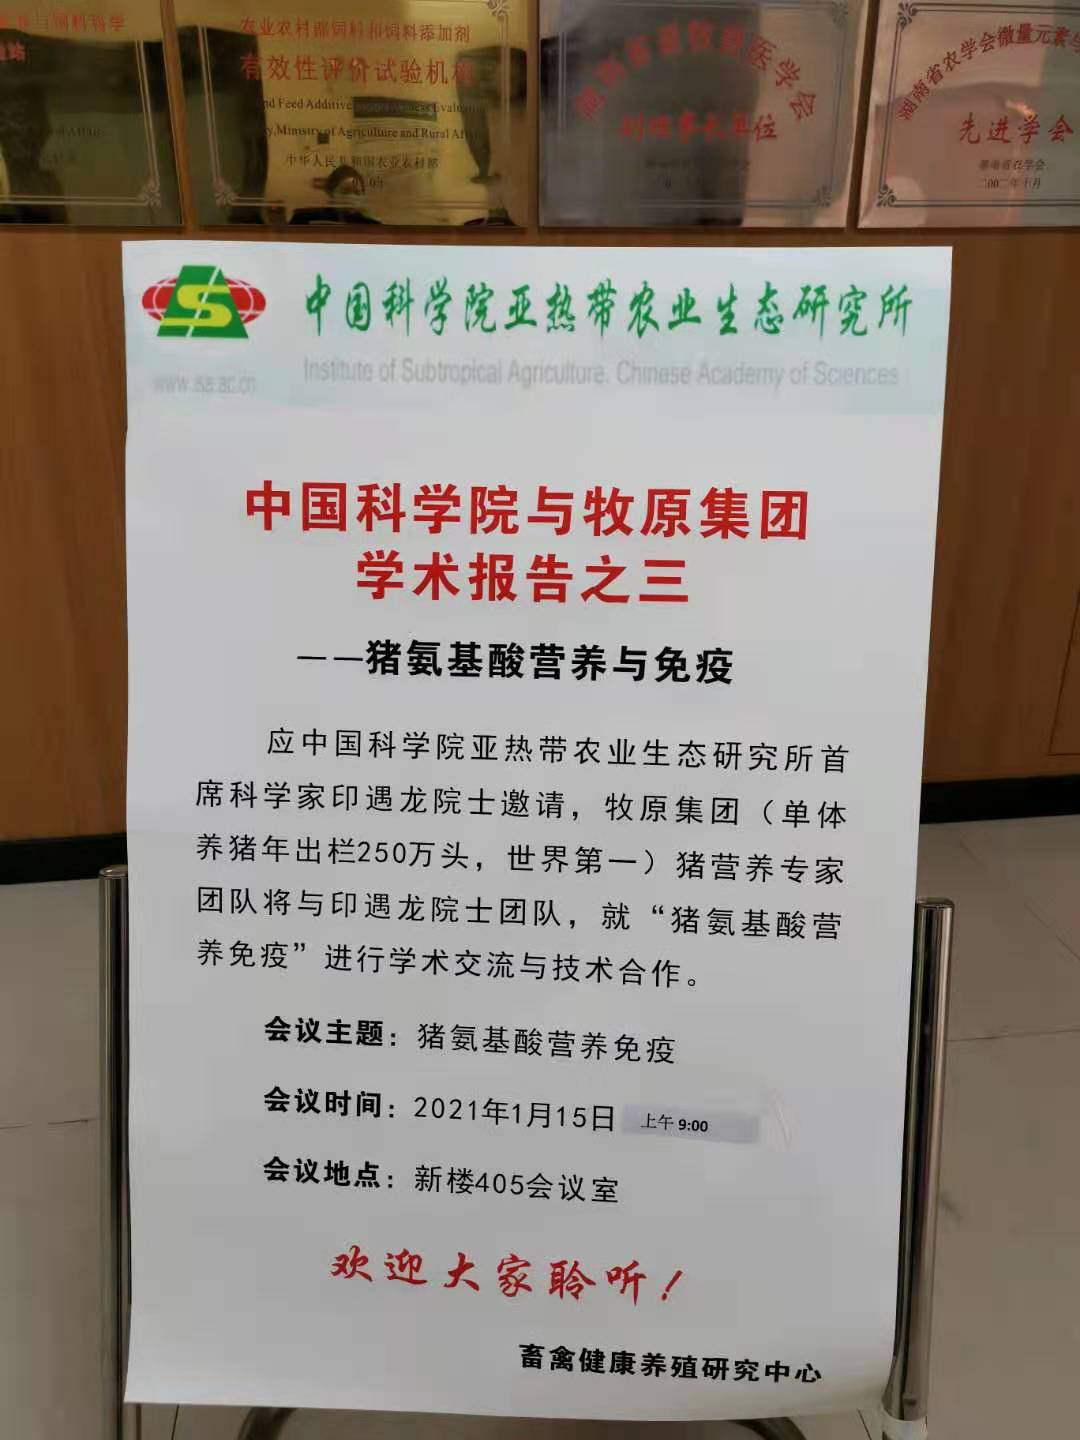 中国科学院与牧原集团学术交流研讨会—猪氨基酸营养与免疫